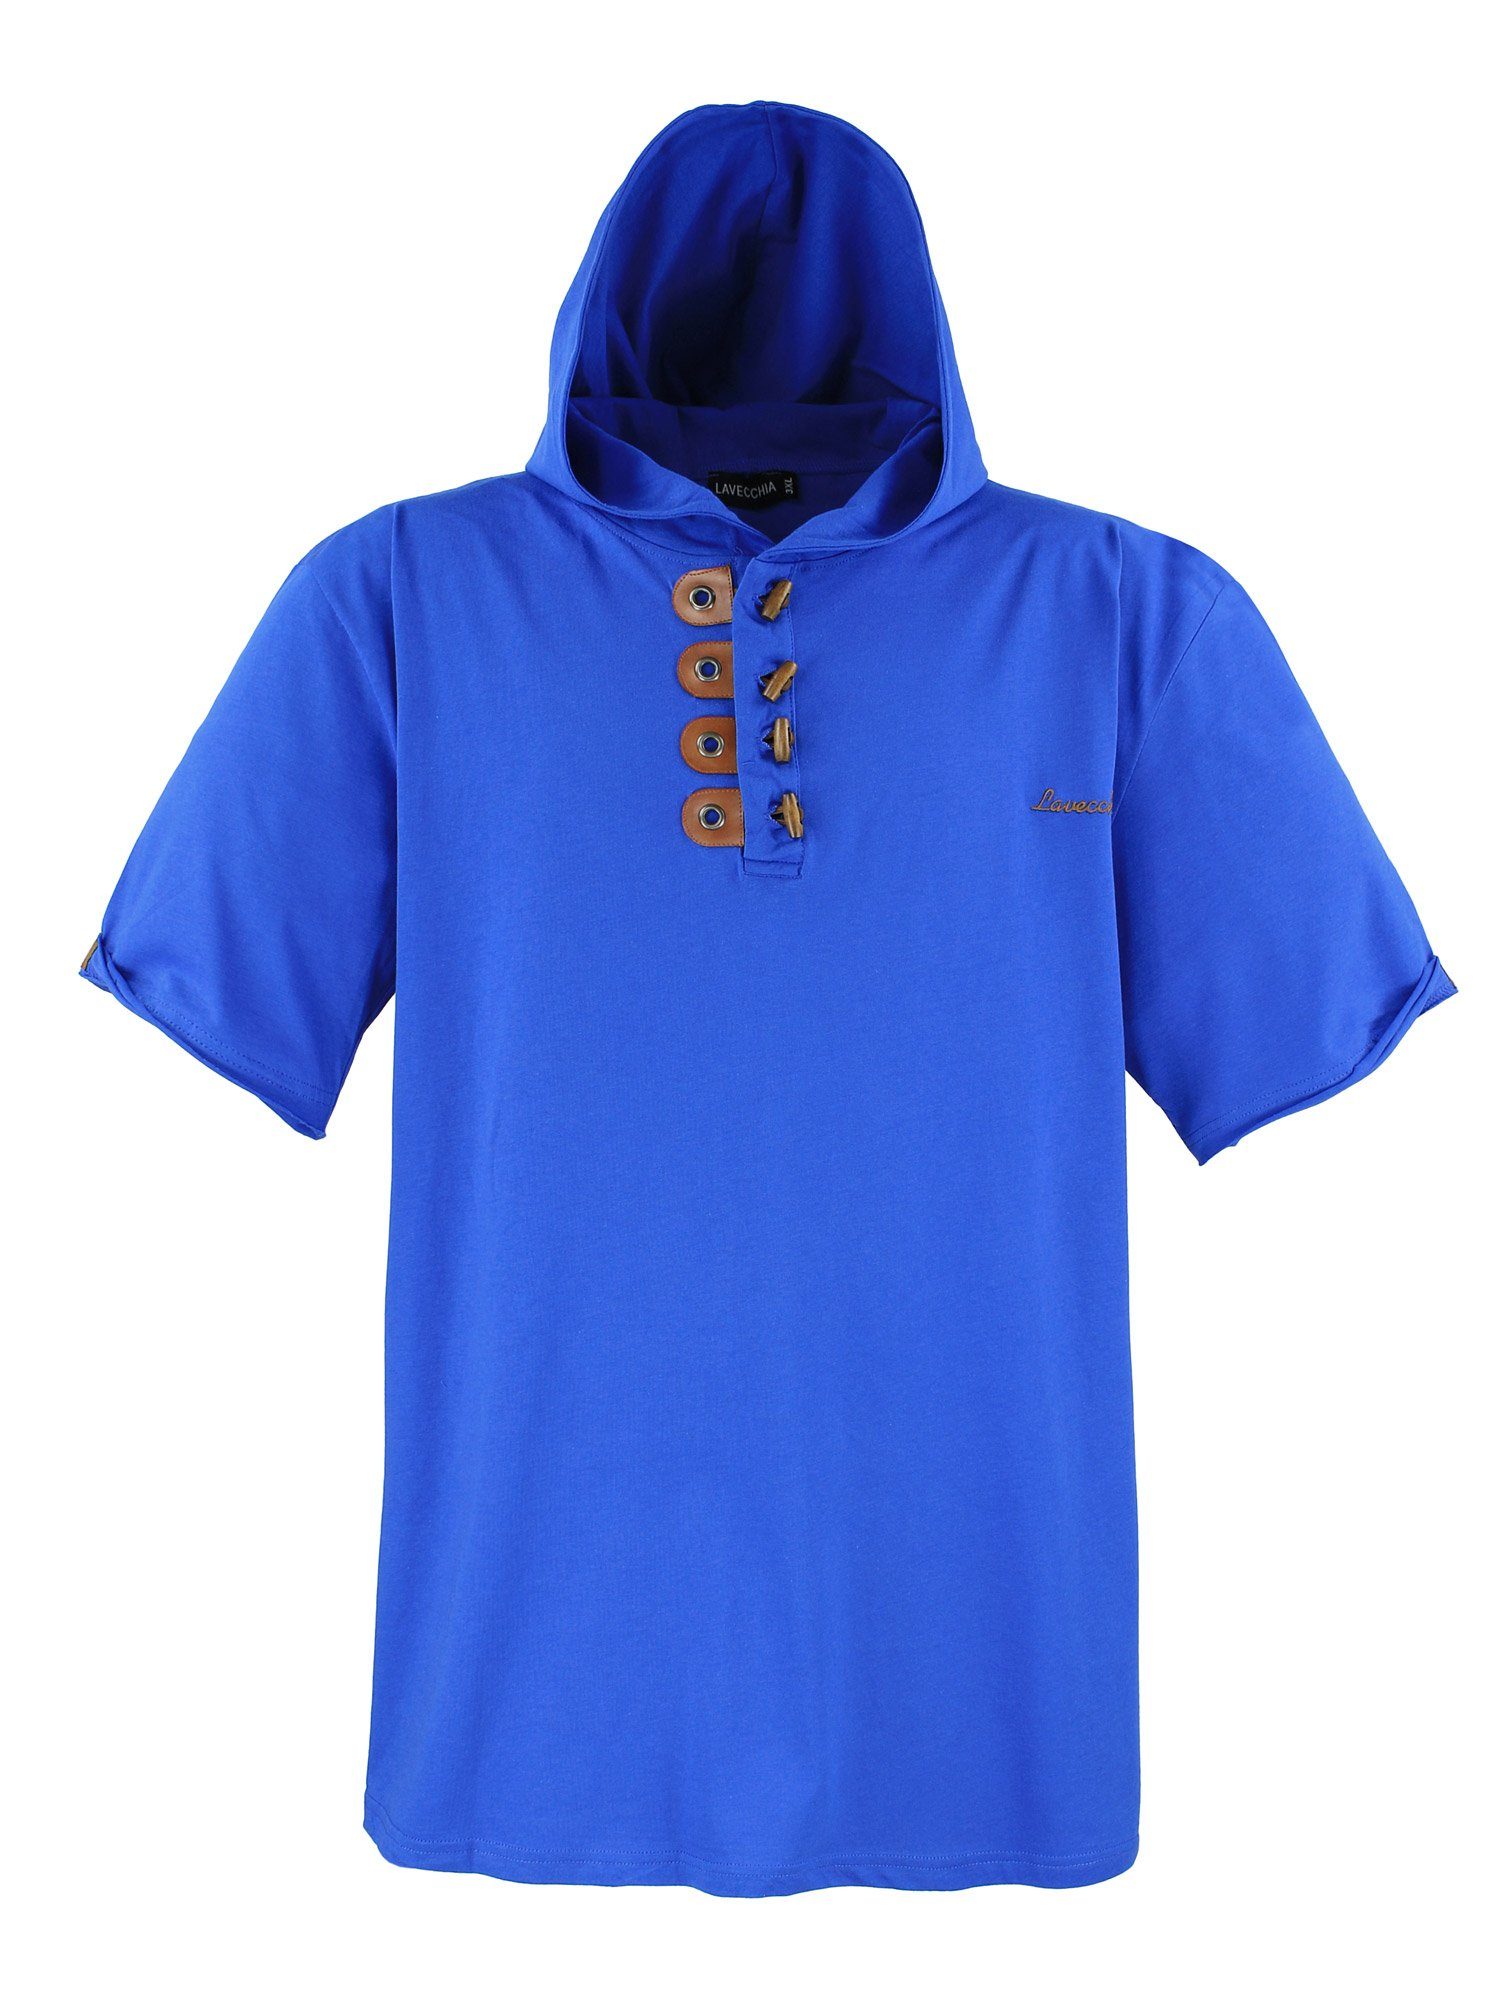 Lavecchia T-Shirt Übergrößen Herren Kapuzenshirt LV-609 Herrenshirt Kapuzen Shirt royalblau